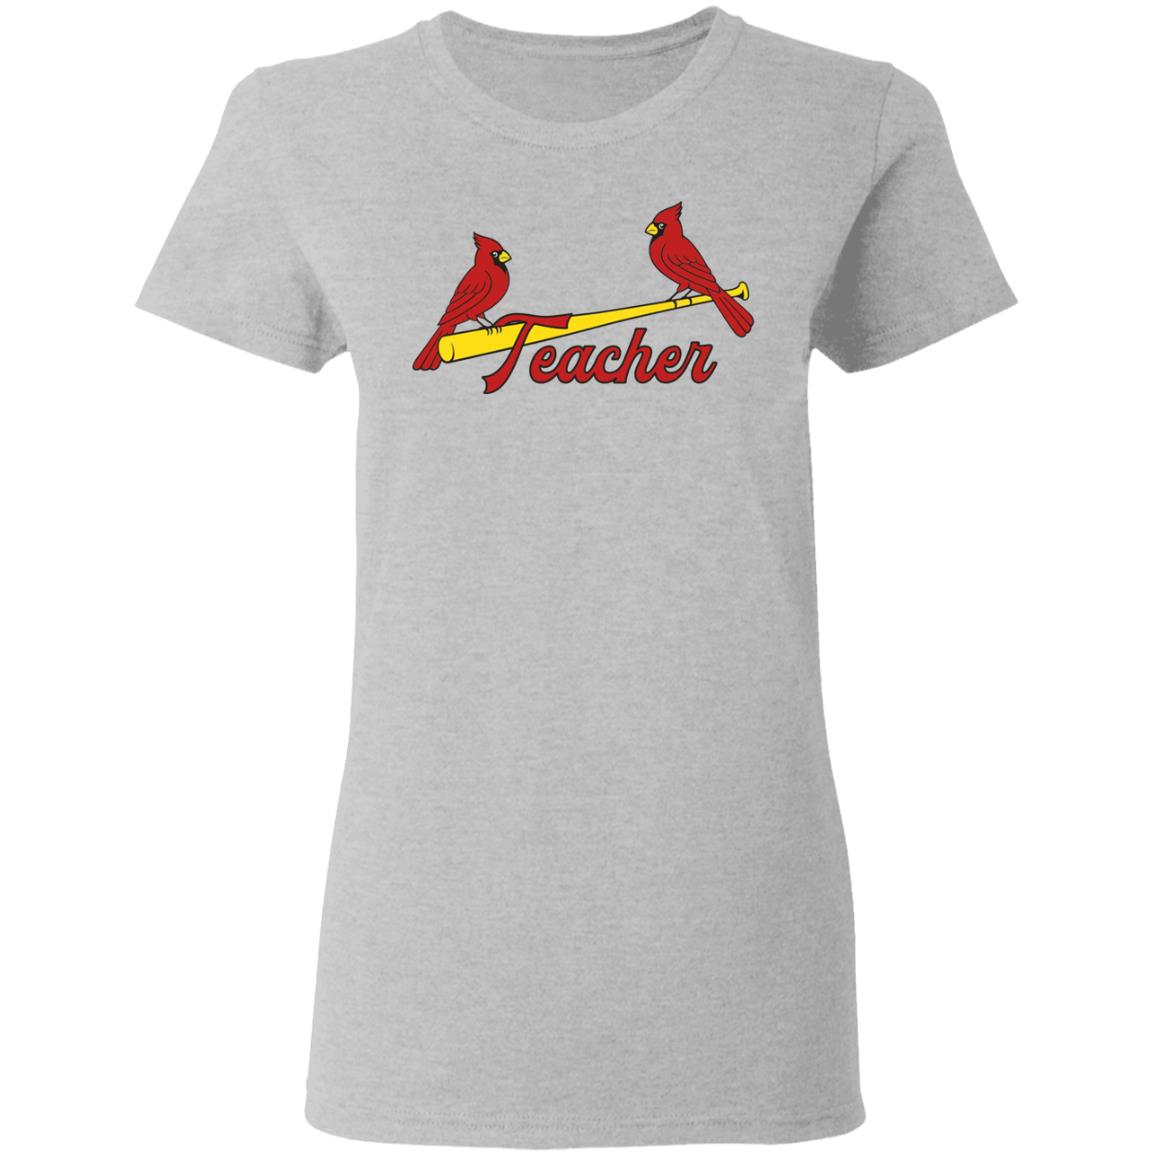 St. Louis Cardinals Teacher Shirt, T-Shirt, Hoodie, Tank Top, Sweatshirt